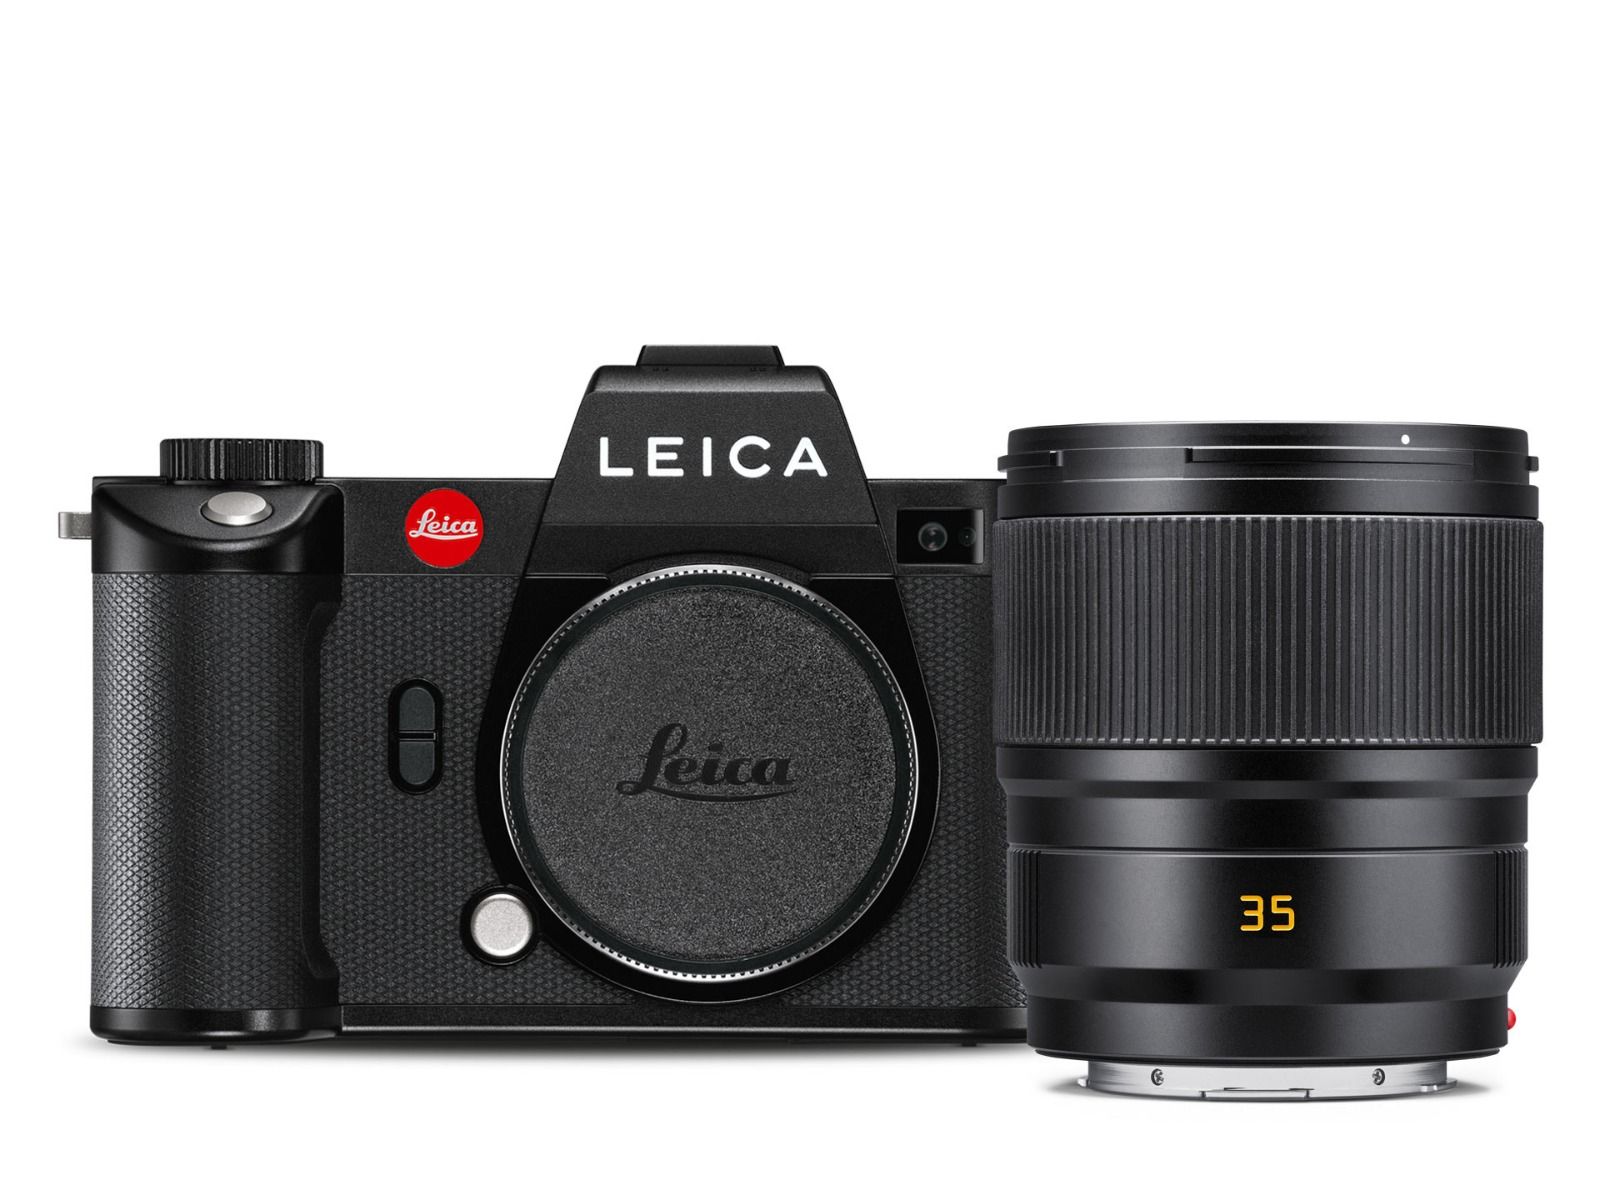 Leica SL2 + Summicron-SL 35mm f/2 ASPH Kit